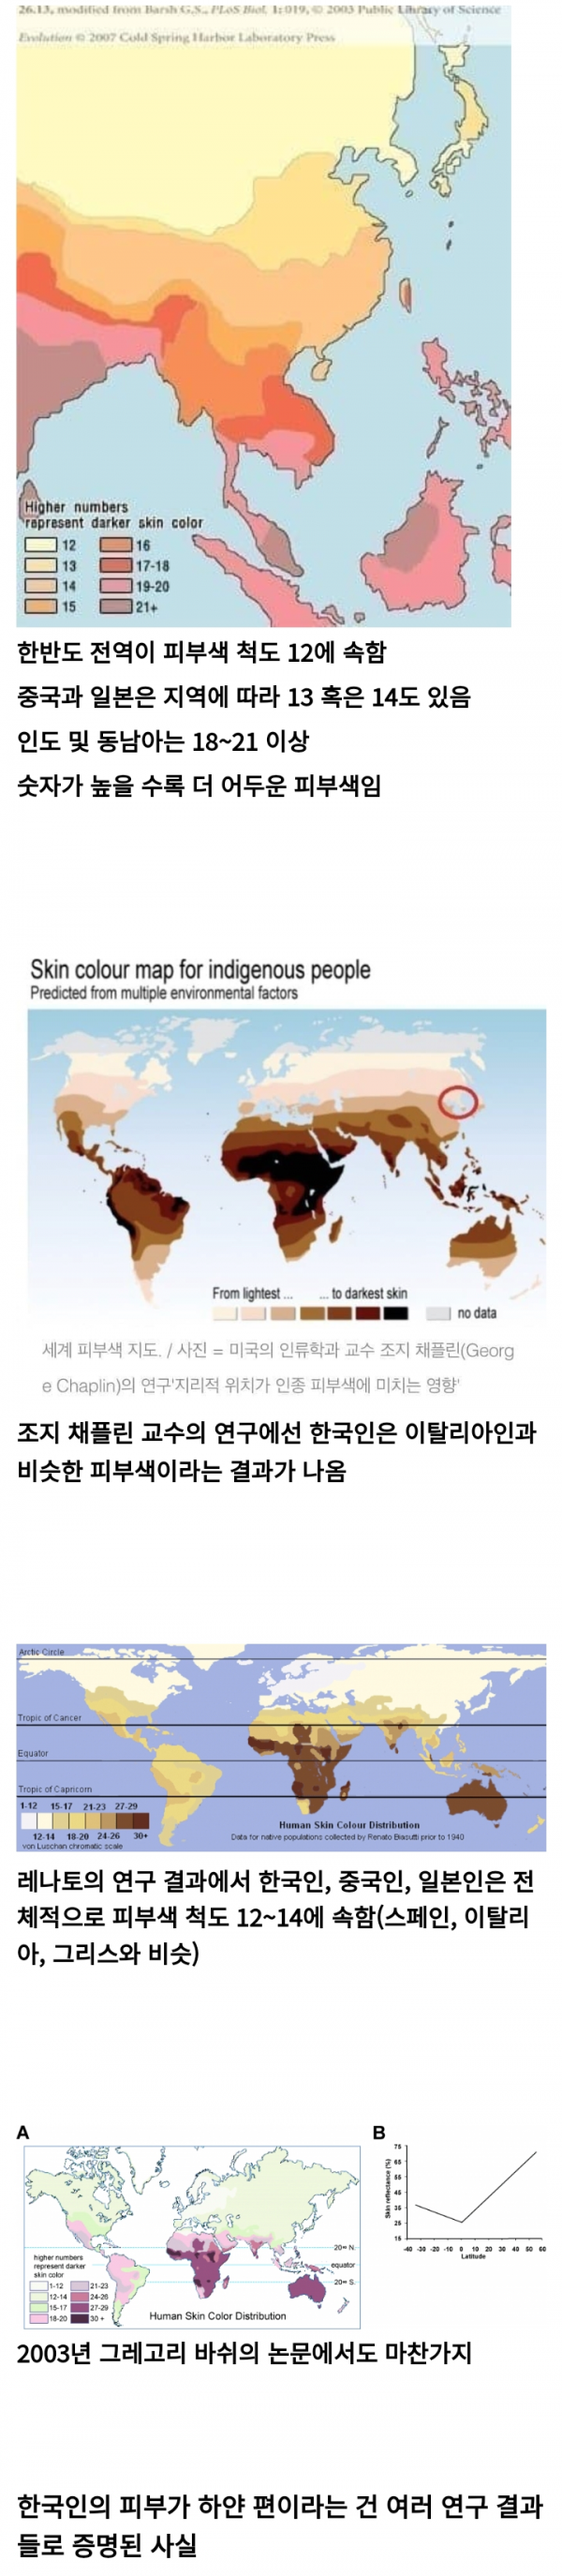 10101010.png 아시아에서 가장 하얗다는 한국인 피부색.jpg